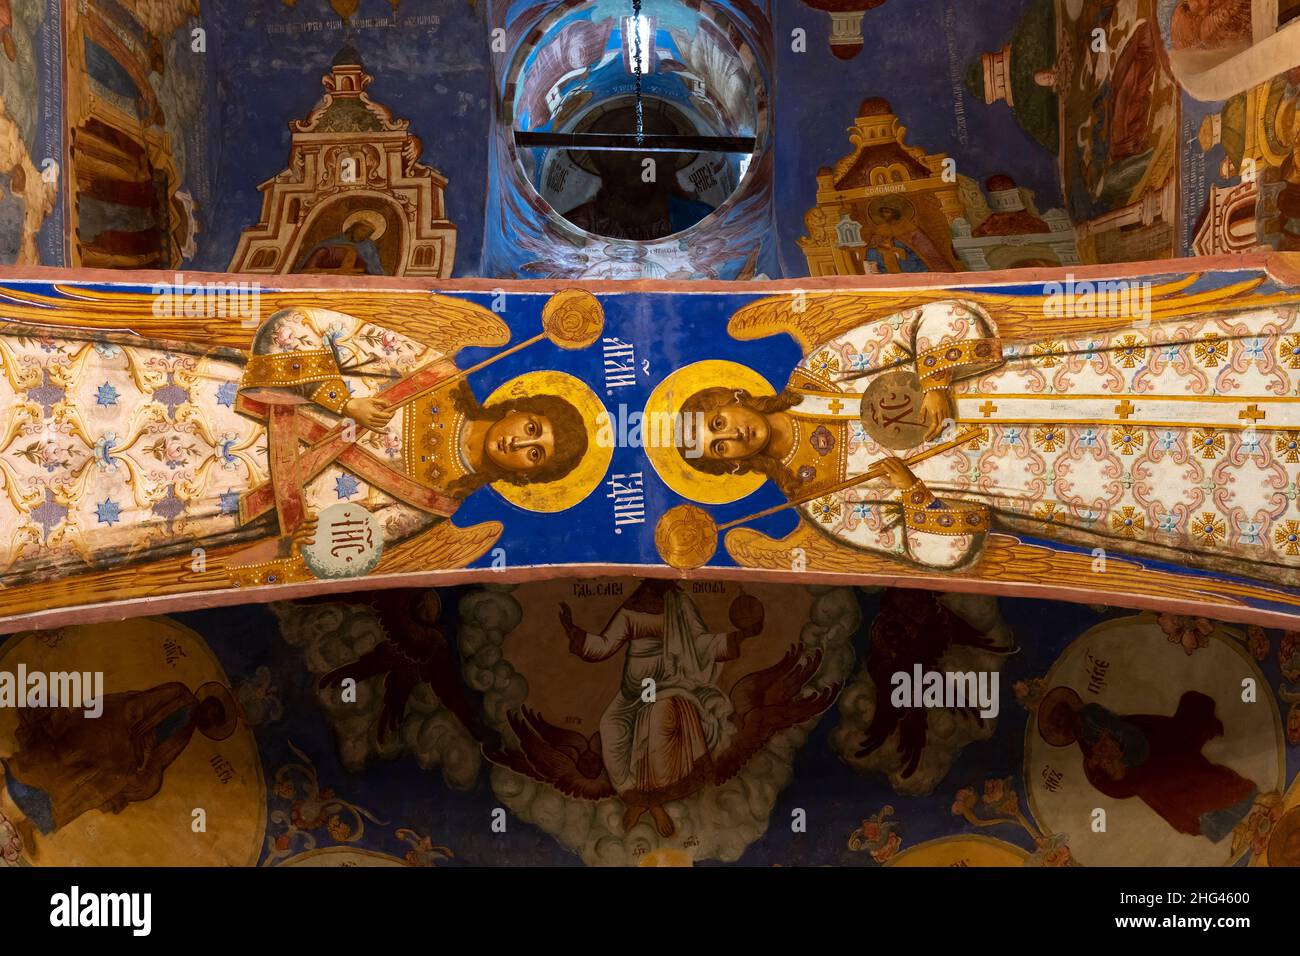 Suzdal, Russie - 24 septembre 2019 : fresque au plafond de la cathédrale de Transfiguration dans le monastère de Spaso-Evfimie à Suzdal, respublika Ta Banque D'Images